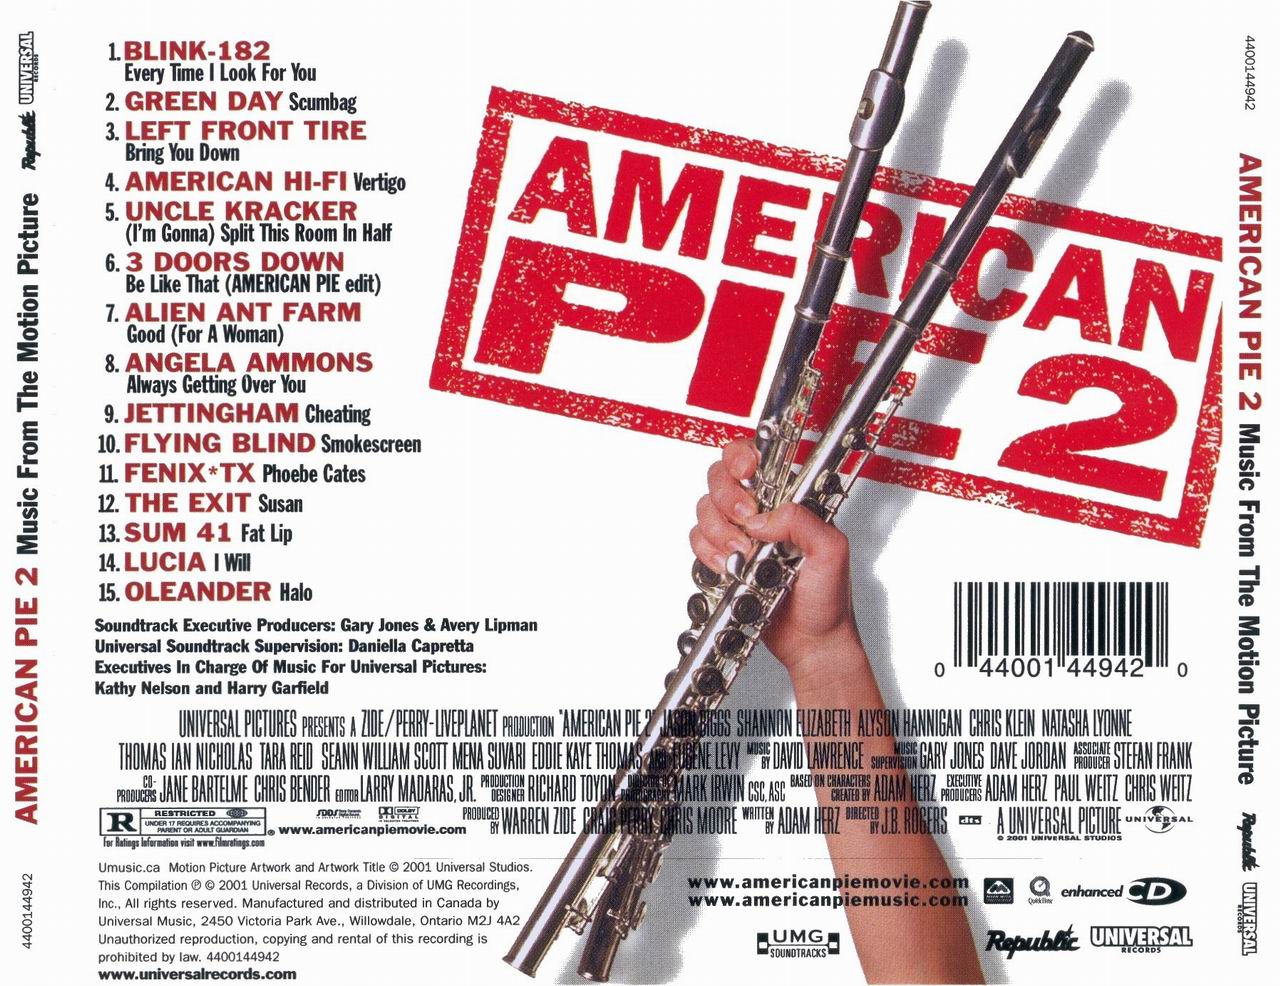 Cartula Trasera de Bso American Pie 2